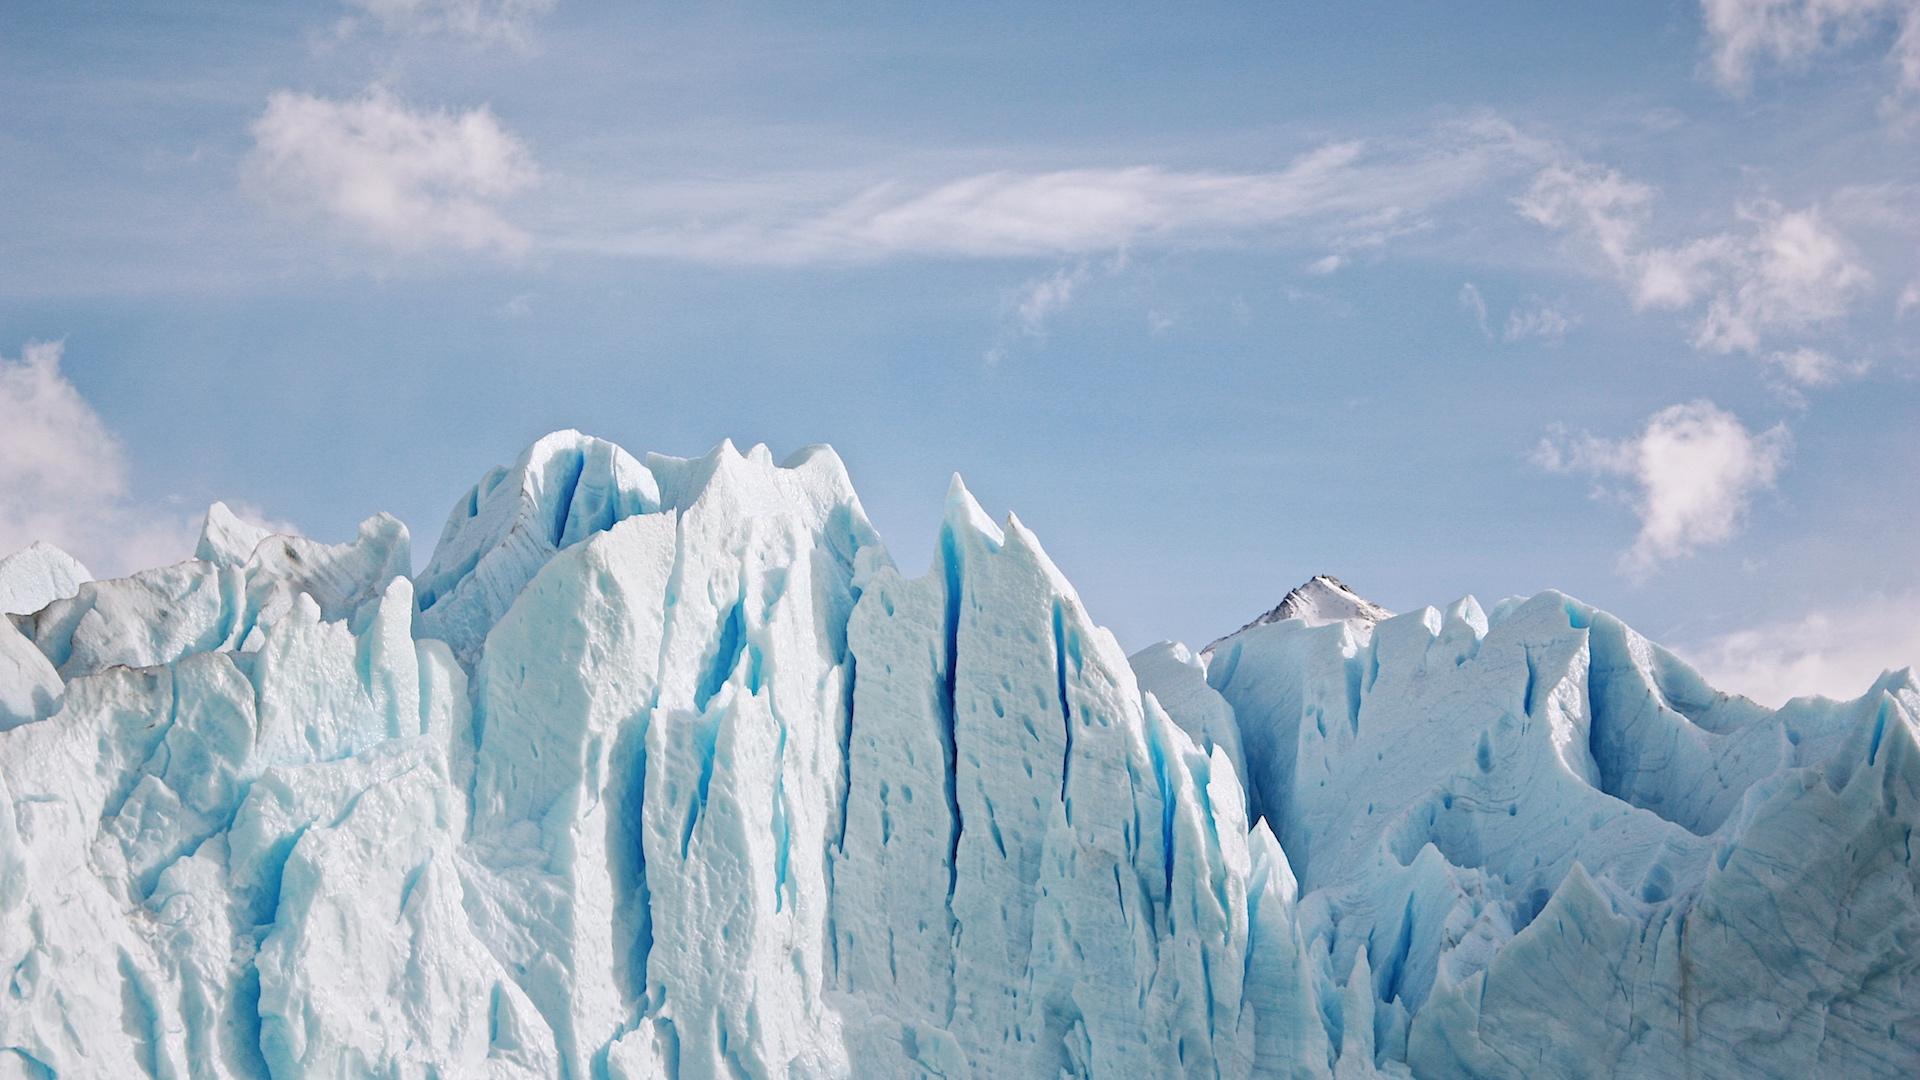 calafate-argentina-patagonia-foto-imagen-wallpaper-29012016-norbertosica-in9